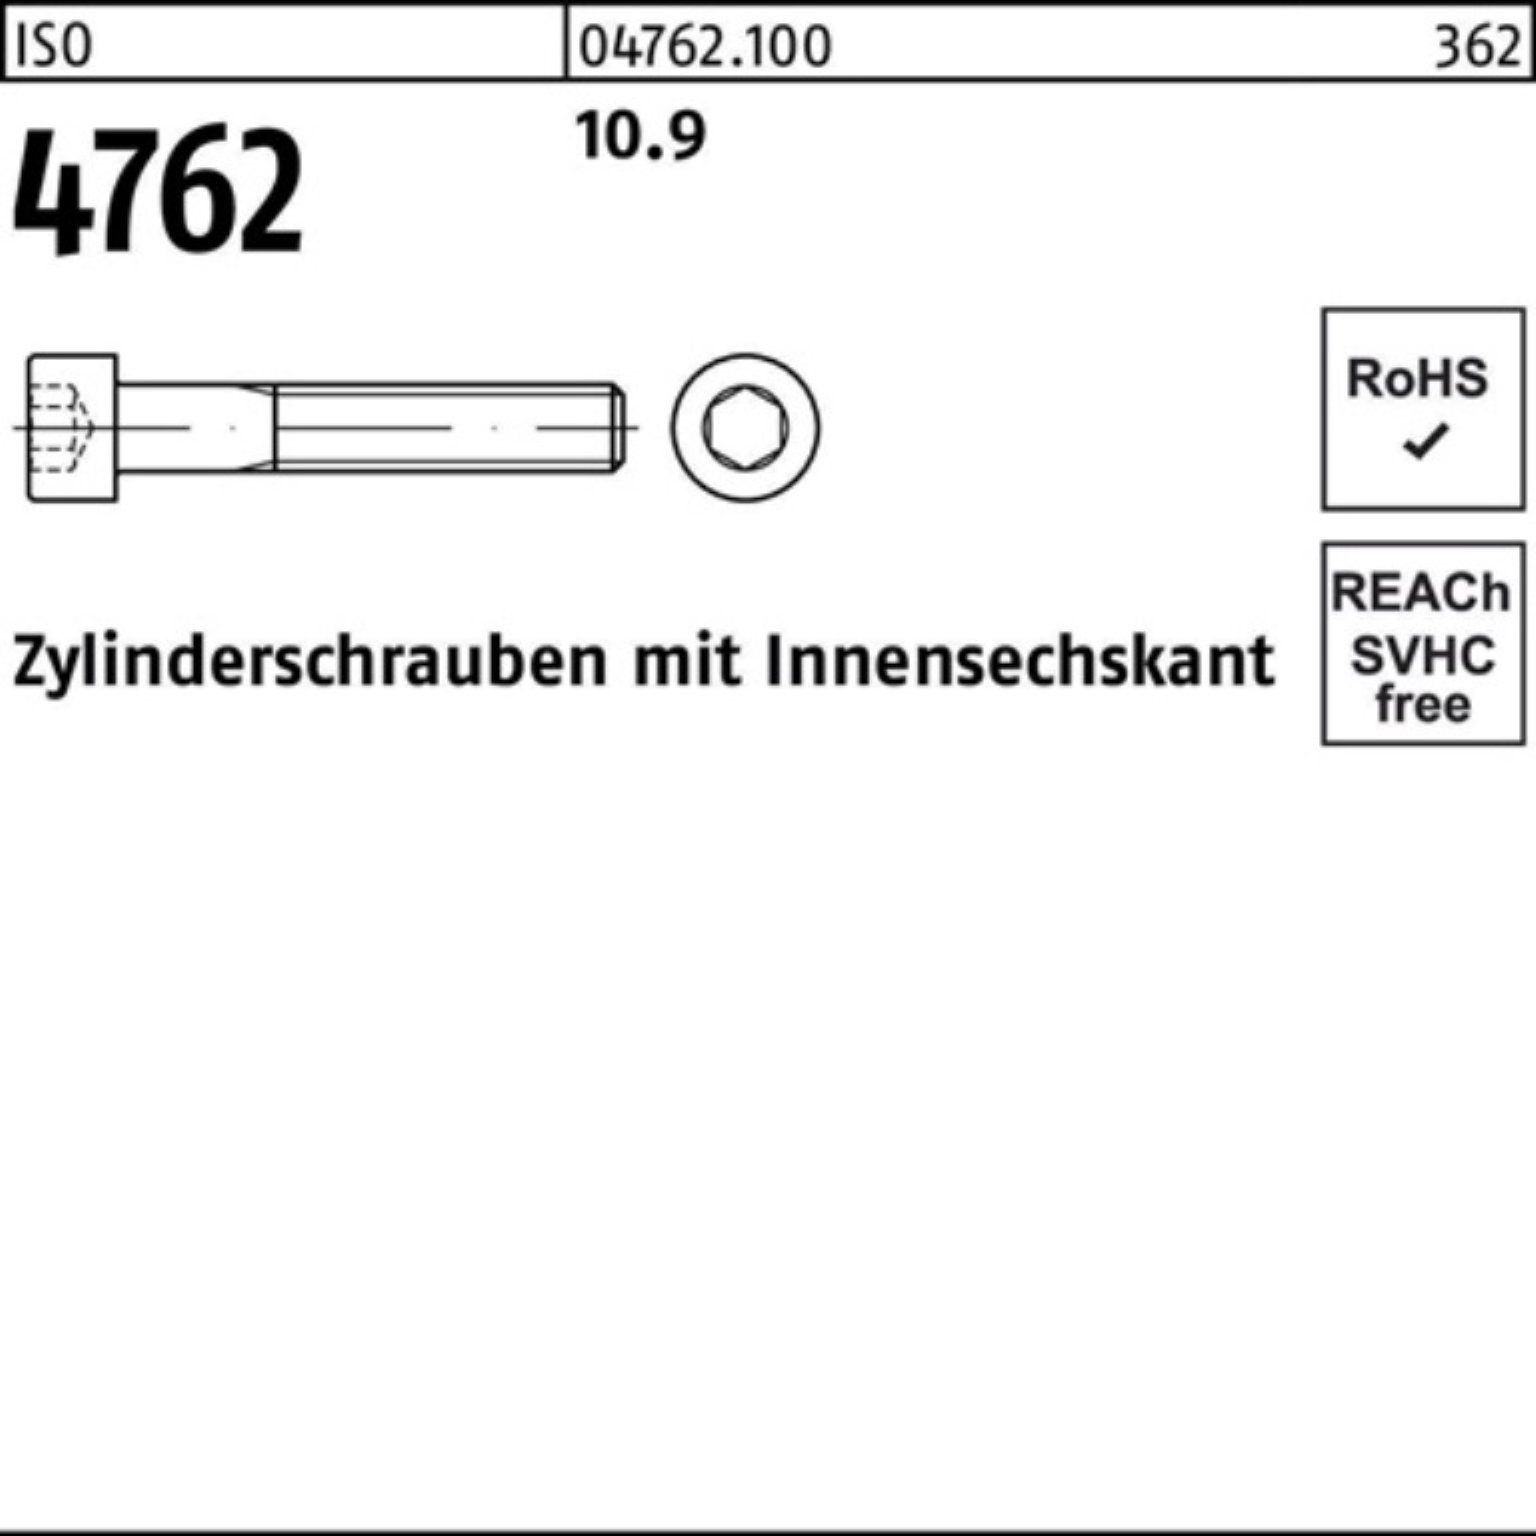 Pack Zylinderschraube Zylinderschraube 4762 90 200 Innen-6kt 200er 10.9 ISO M6x Reyher Stück